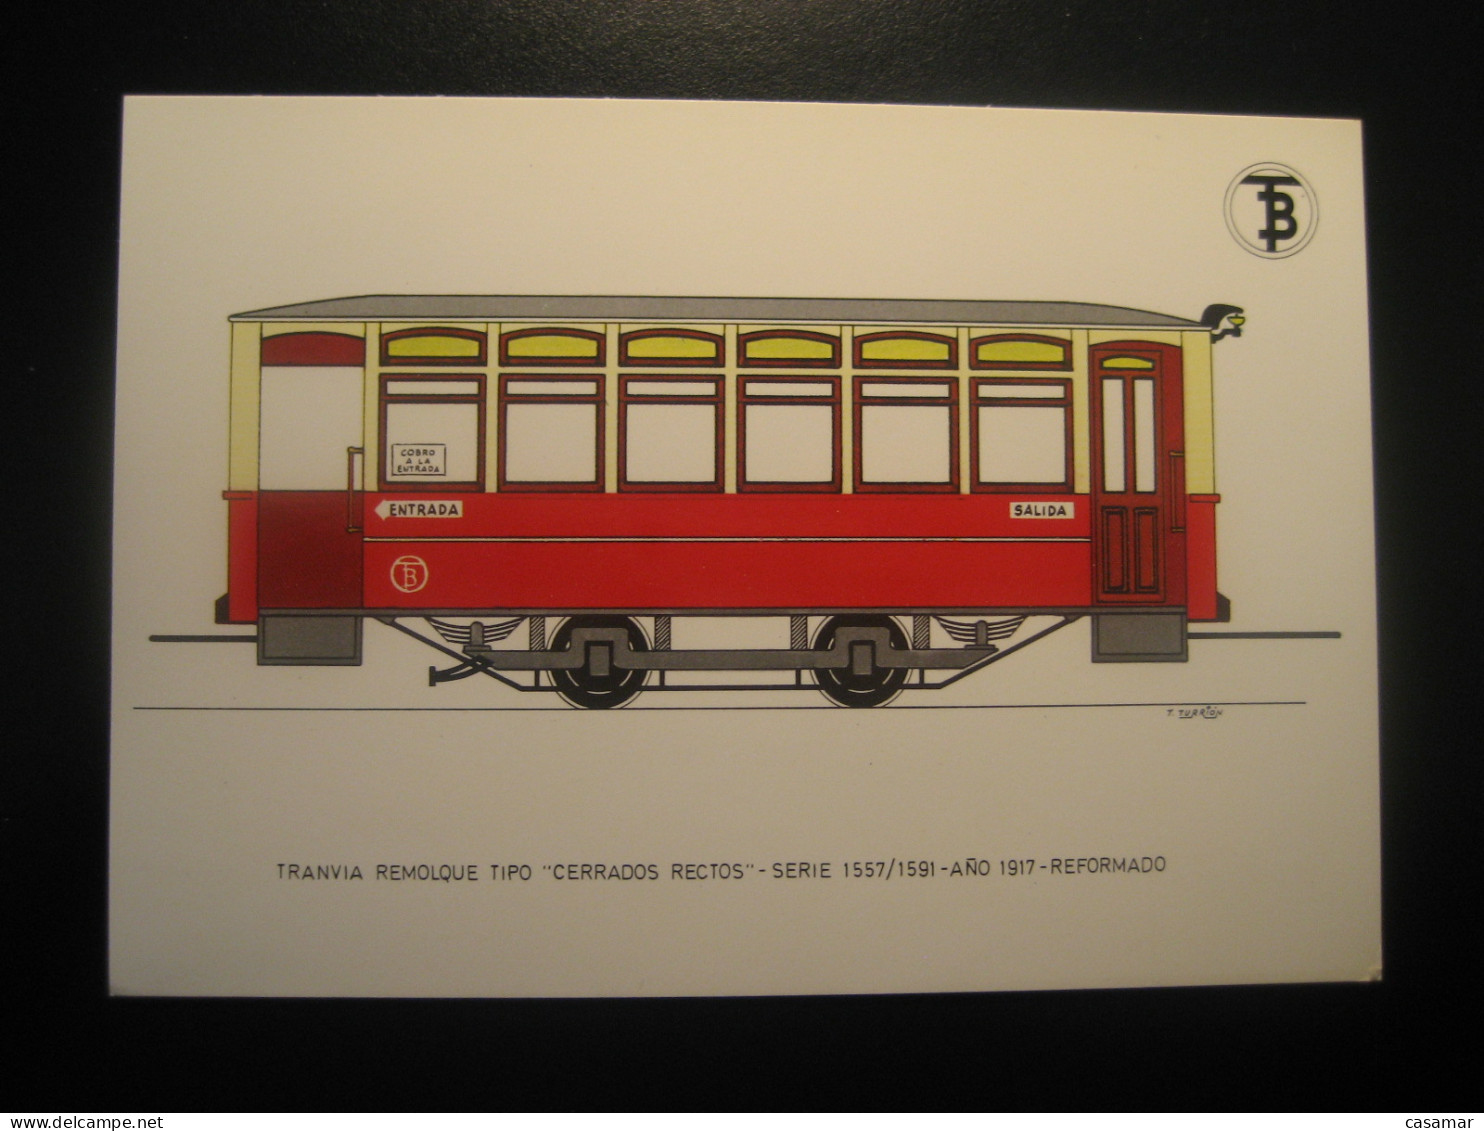 Tranvia Remolque Tipo Cerrados Rectos 1917 Tram Tramway Postcard SPAIN Barcelona TB - Strassenbahnen